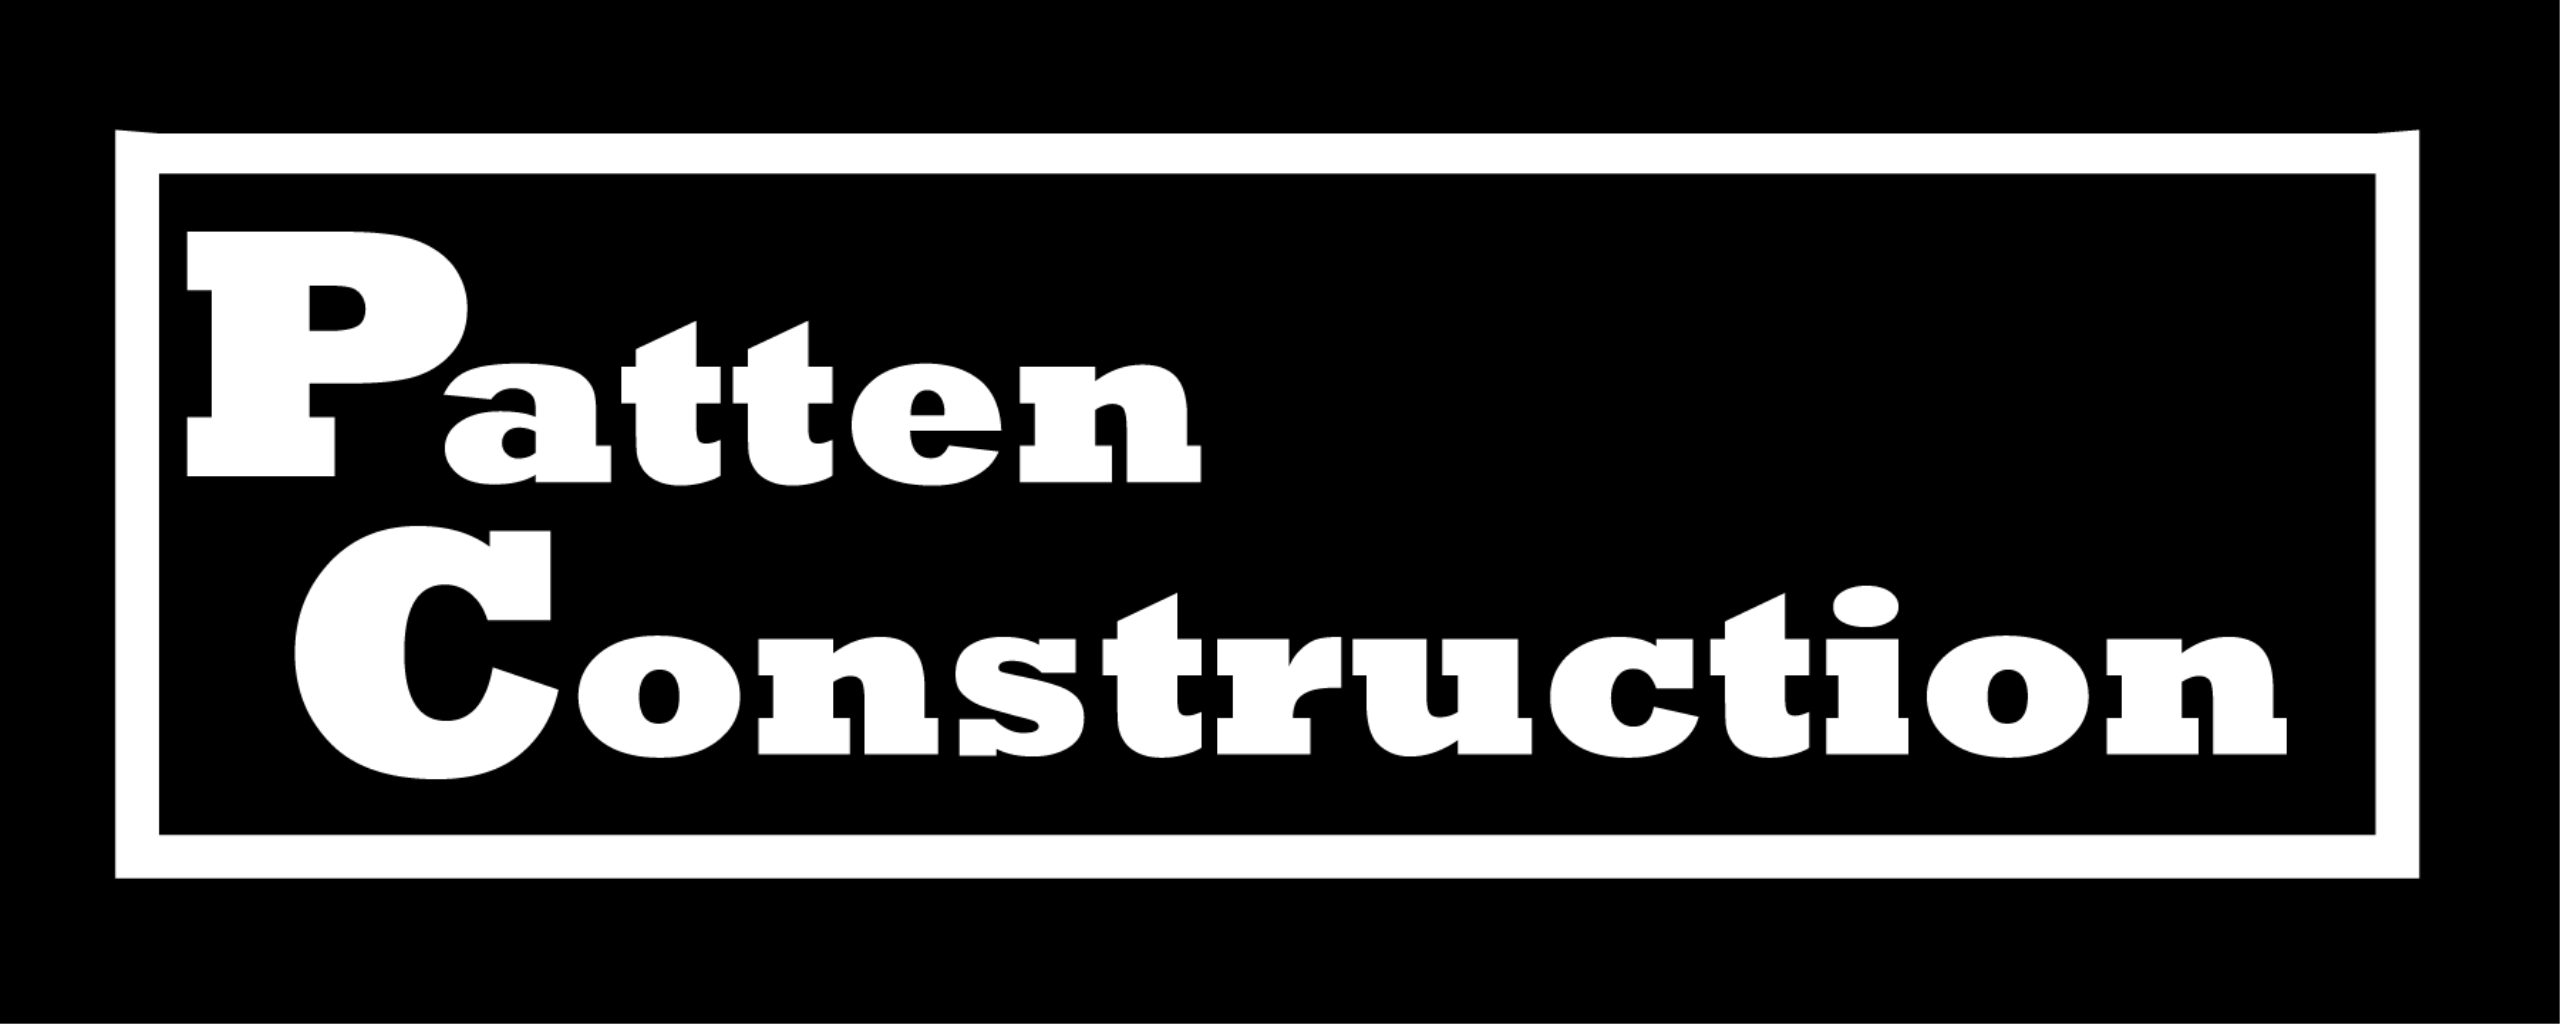 Patten Construction Ltd Logo